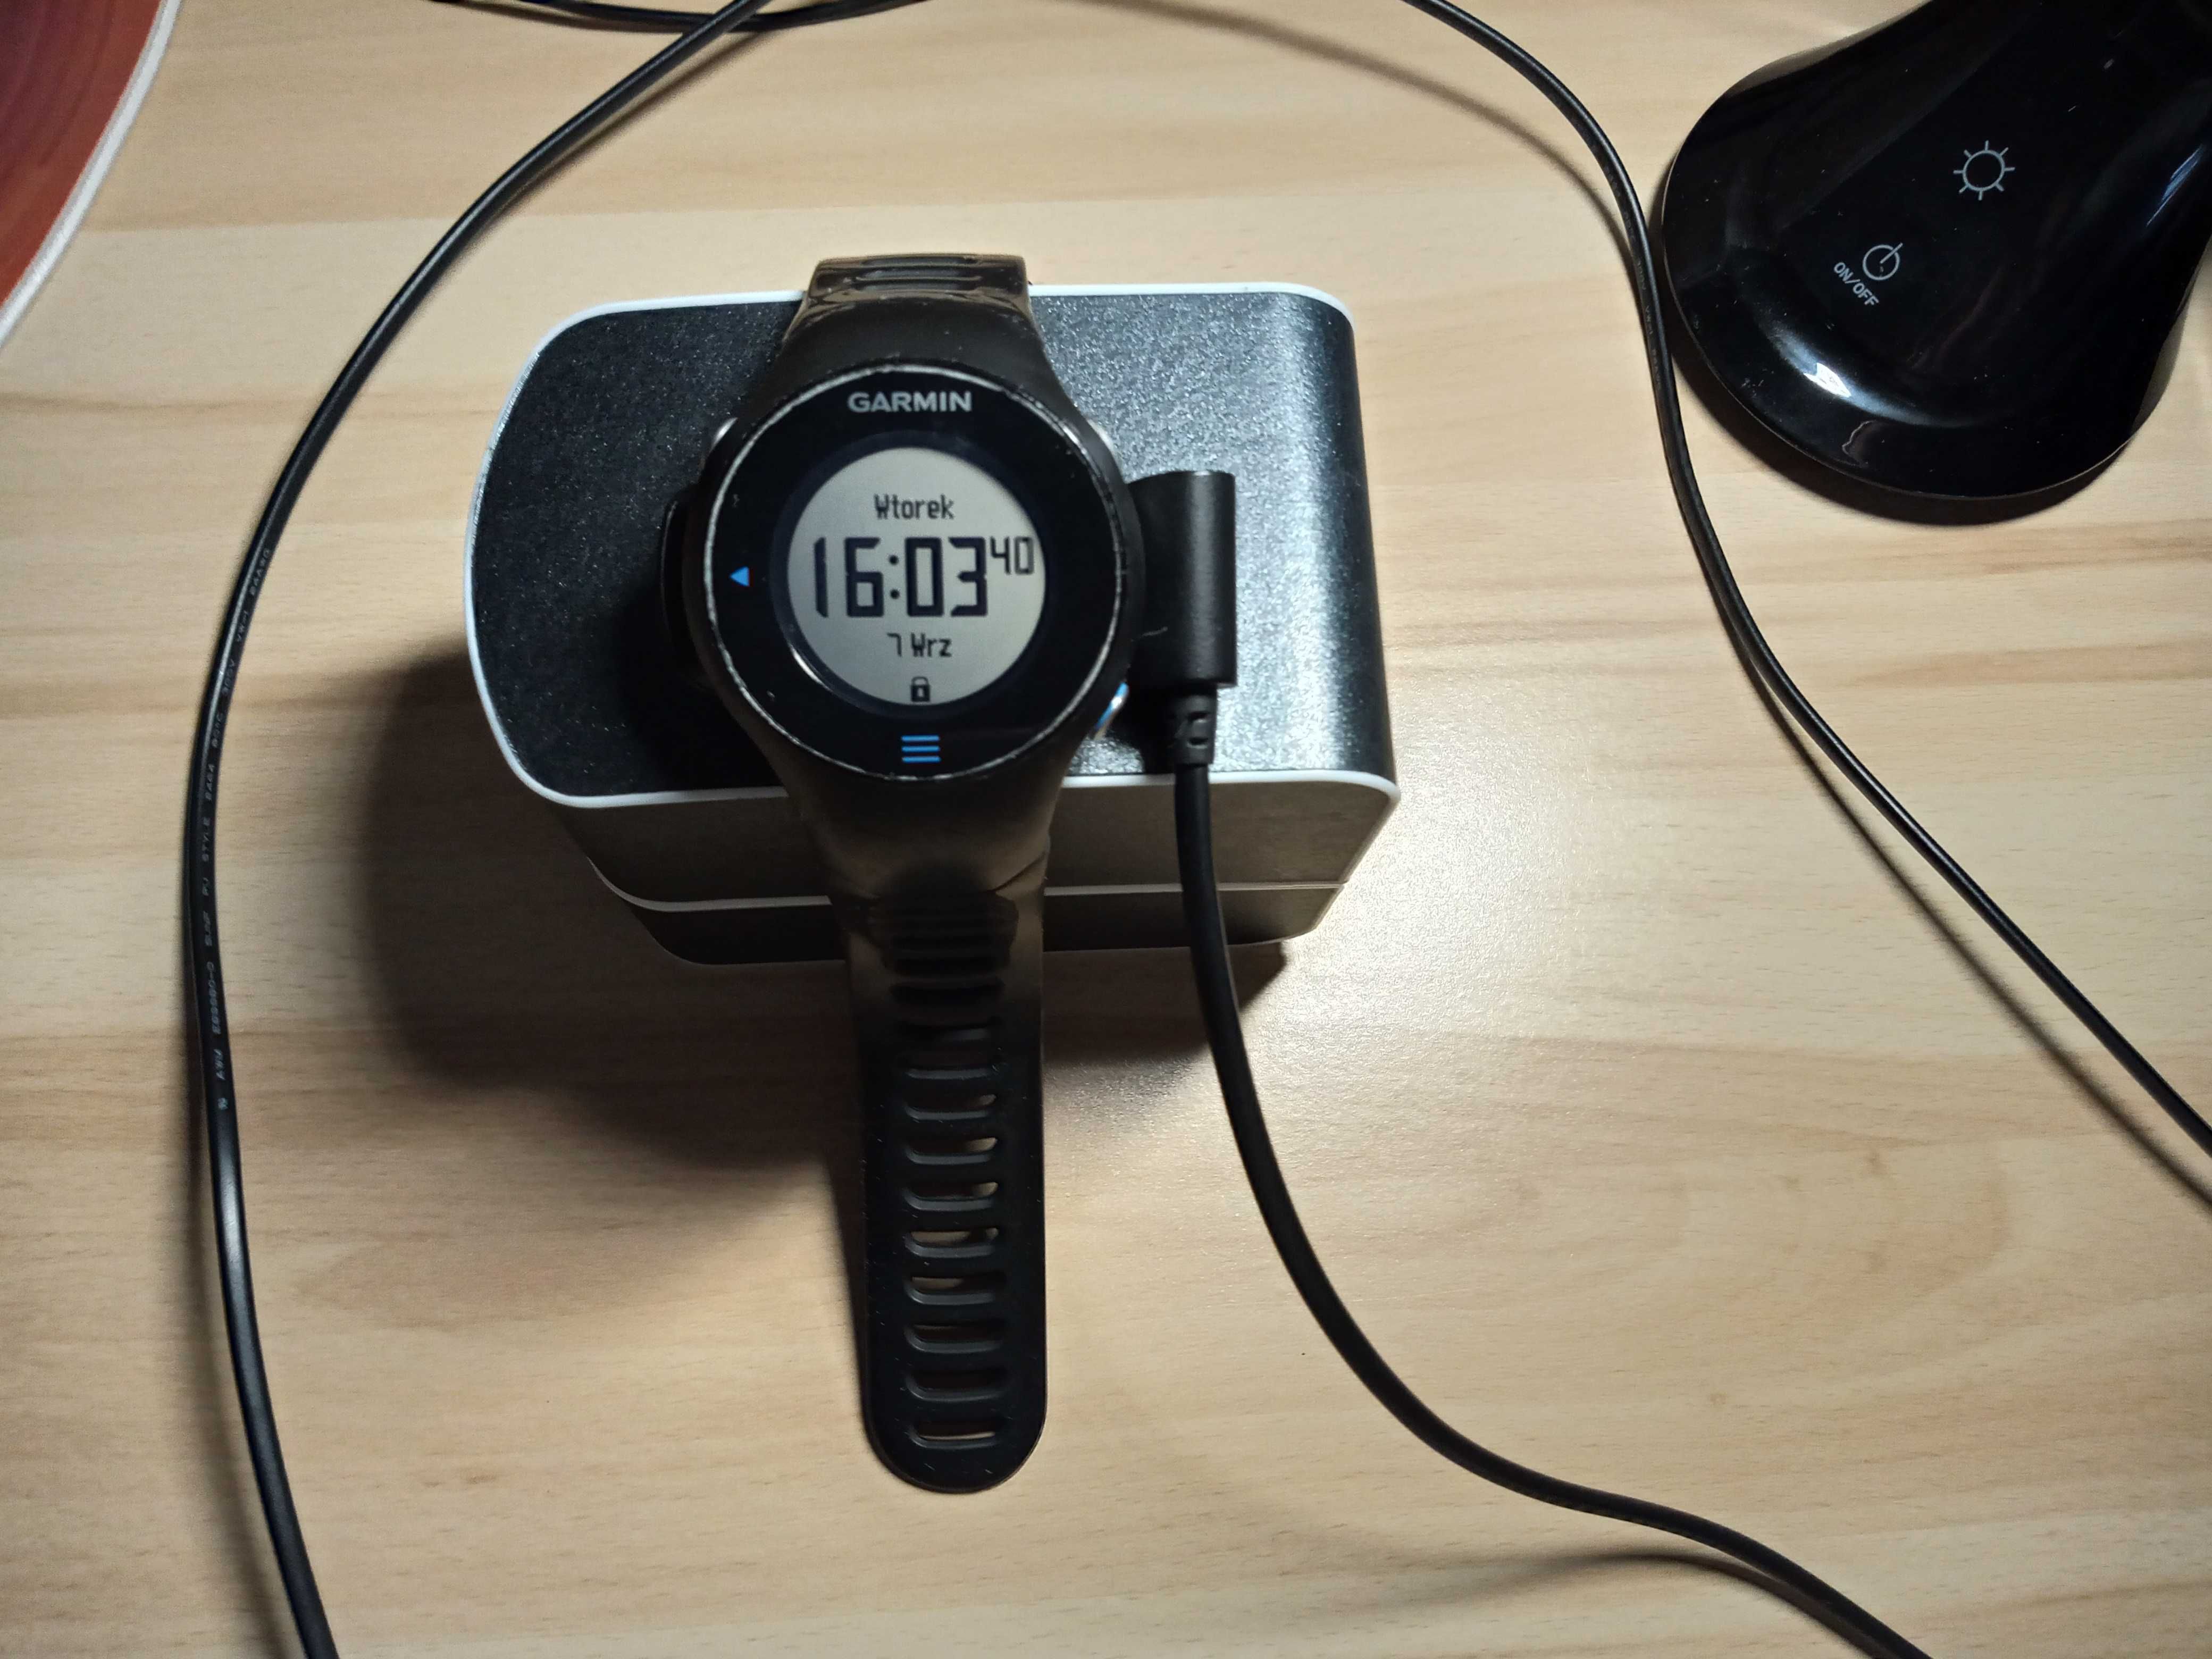 uzywany zegarek GARMIN FORERUNNER 610, GPS, STAN BDB